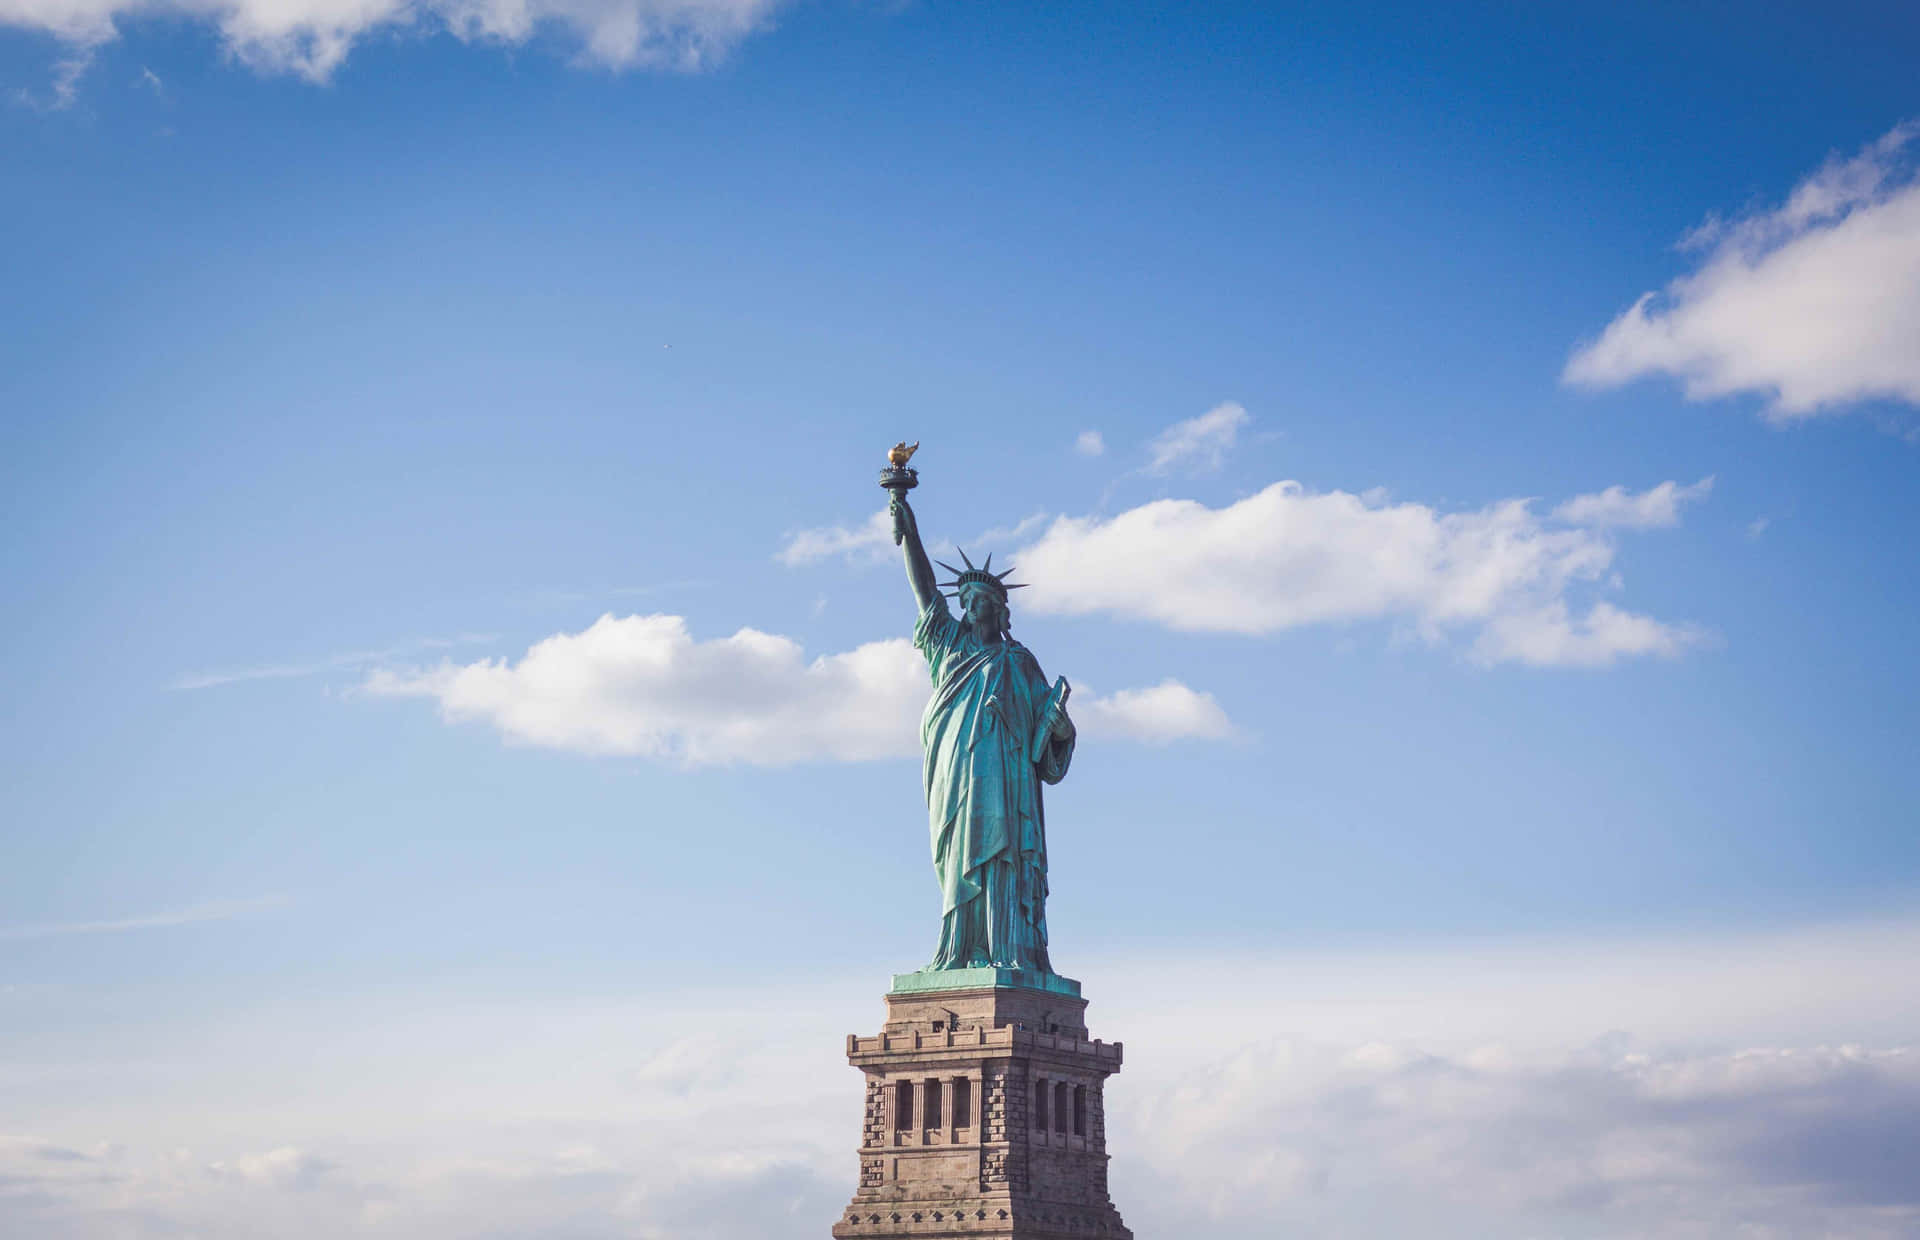 Unsimbolo Di Libertà E Speranza, La Statua Della Libertà Si Erge Maestosa Sullo Skyline Della Città Di New York.